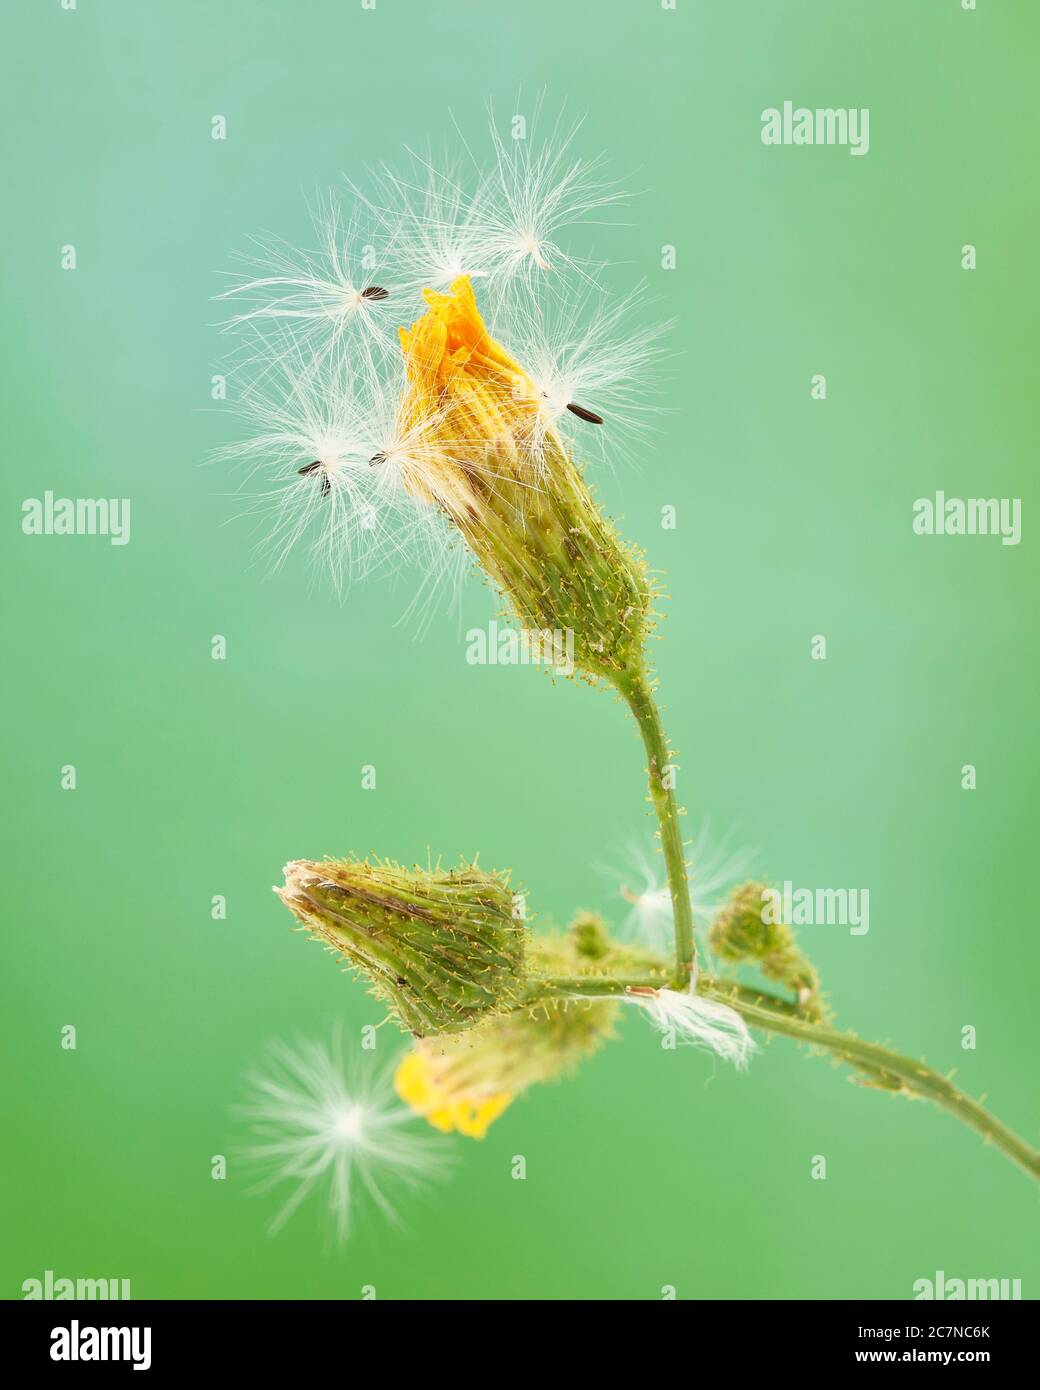 Los brotes de flores sin abrir de una barba de una hoja estrecha, Crepis tectorum, están cubiertos con sus propias semillas que parecen similares a las del diente de león común a Foto de stock